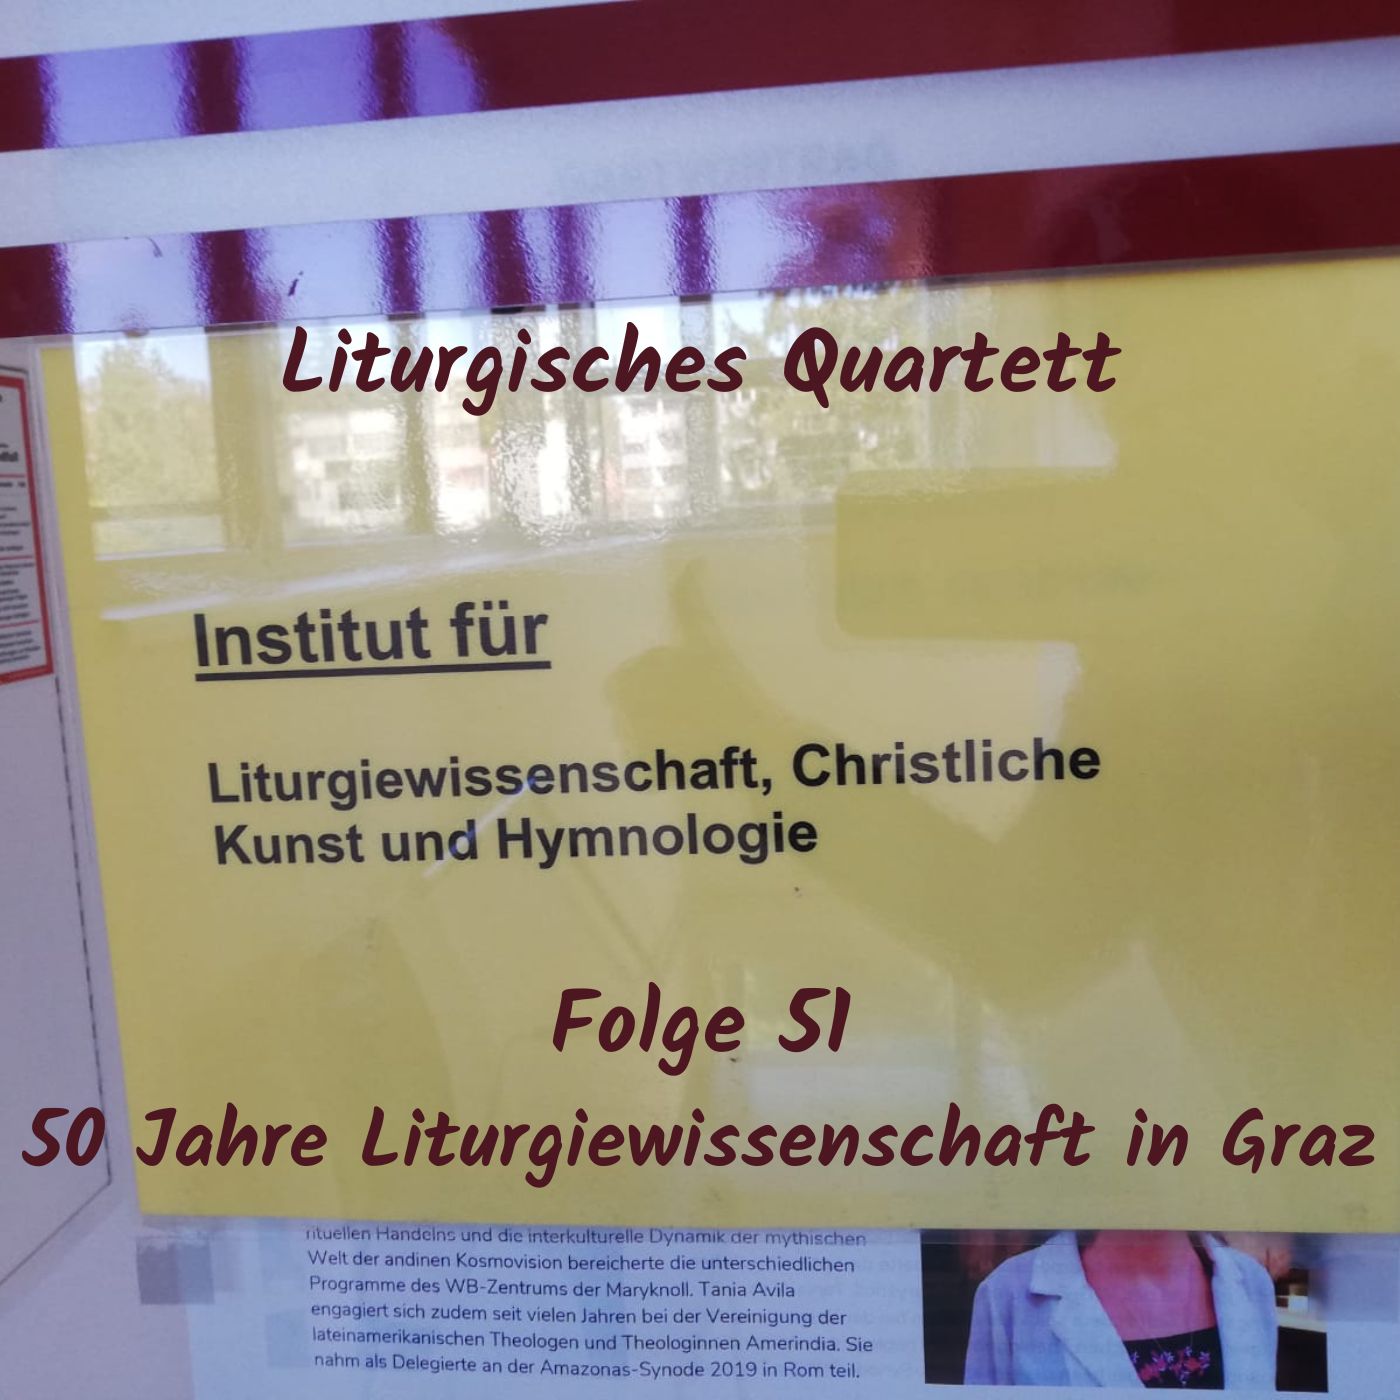 Folge 51 Jubiläum 50 Jahre Liturgiewissenschaft in Graz